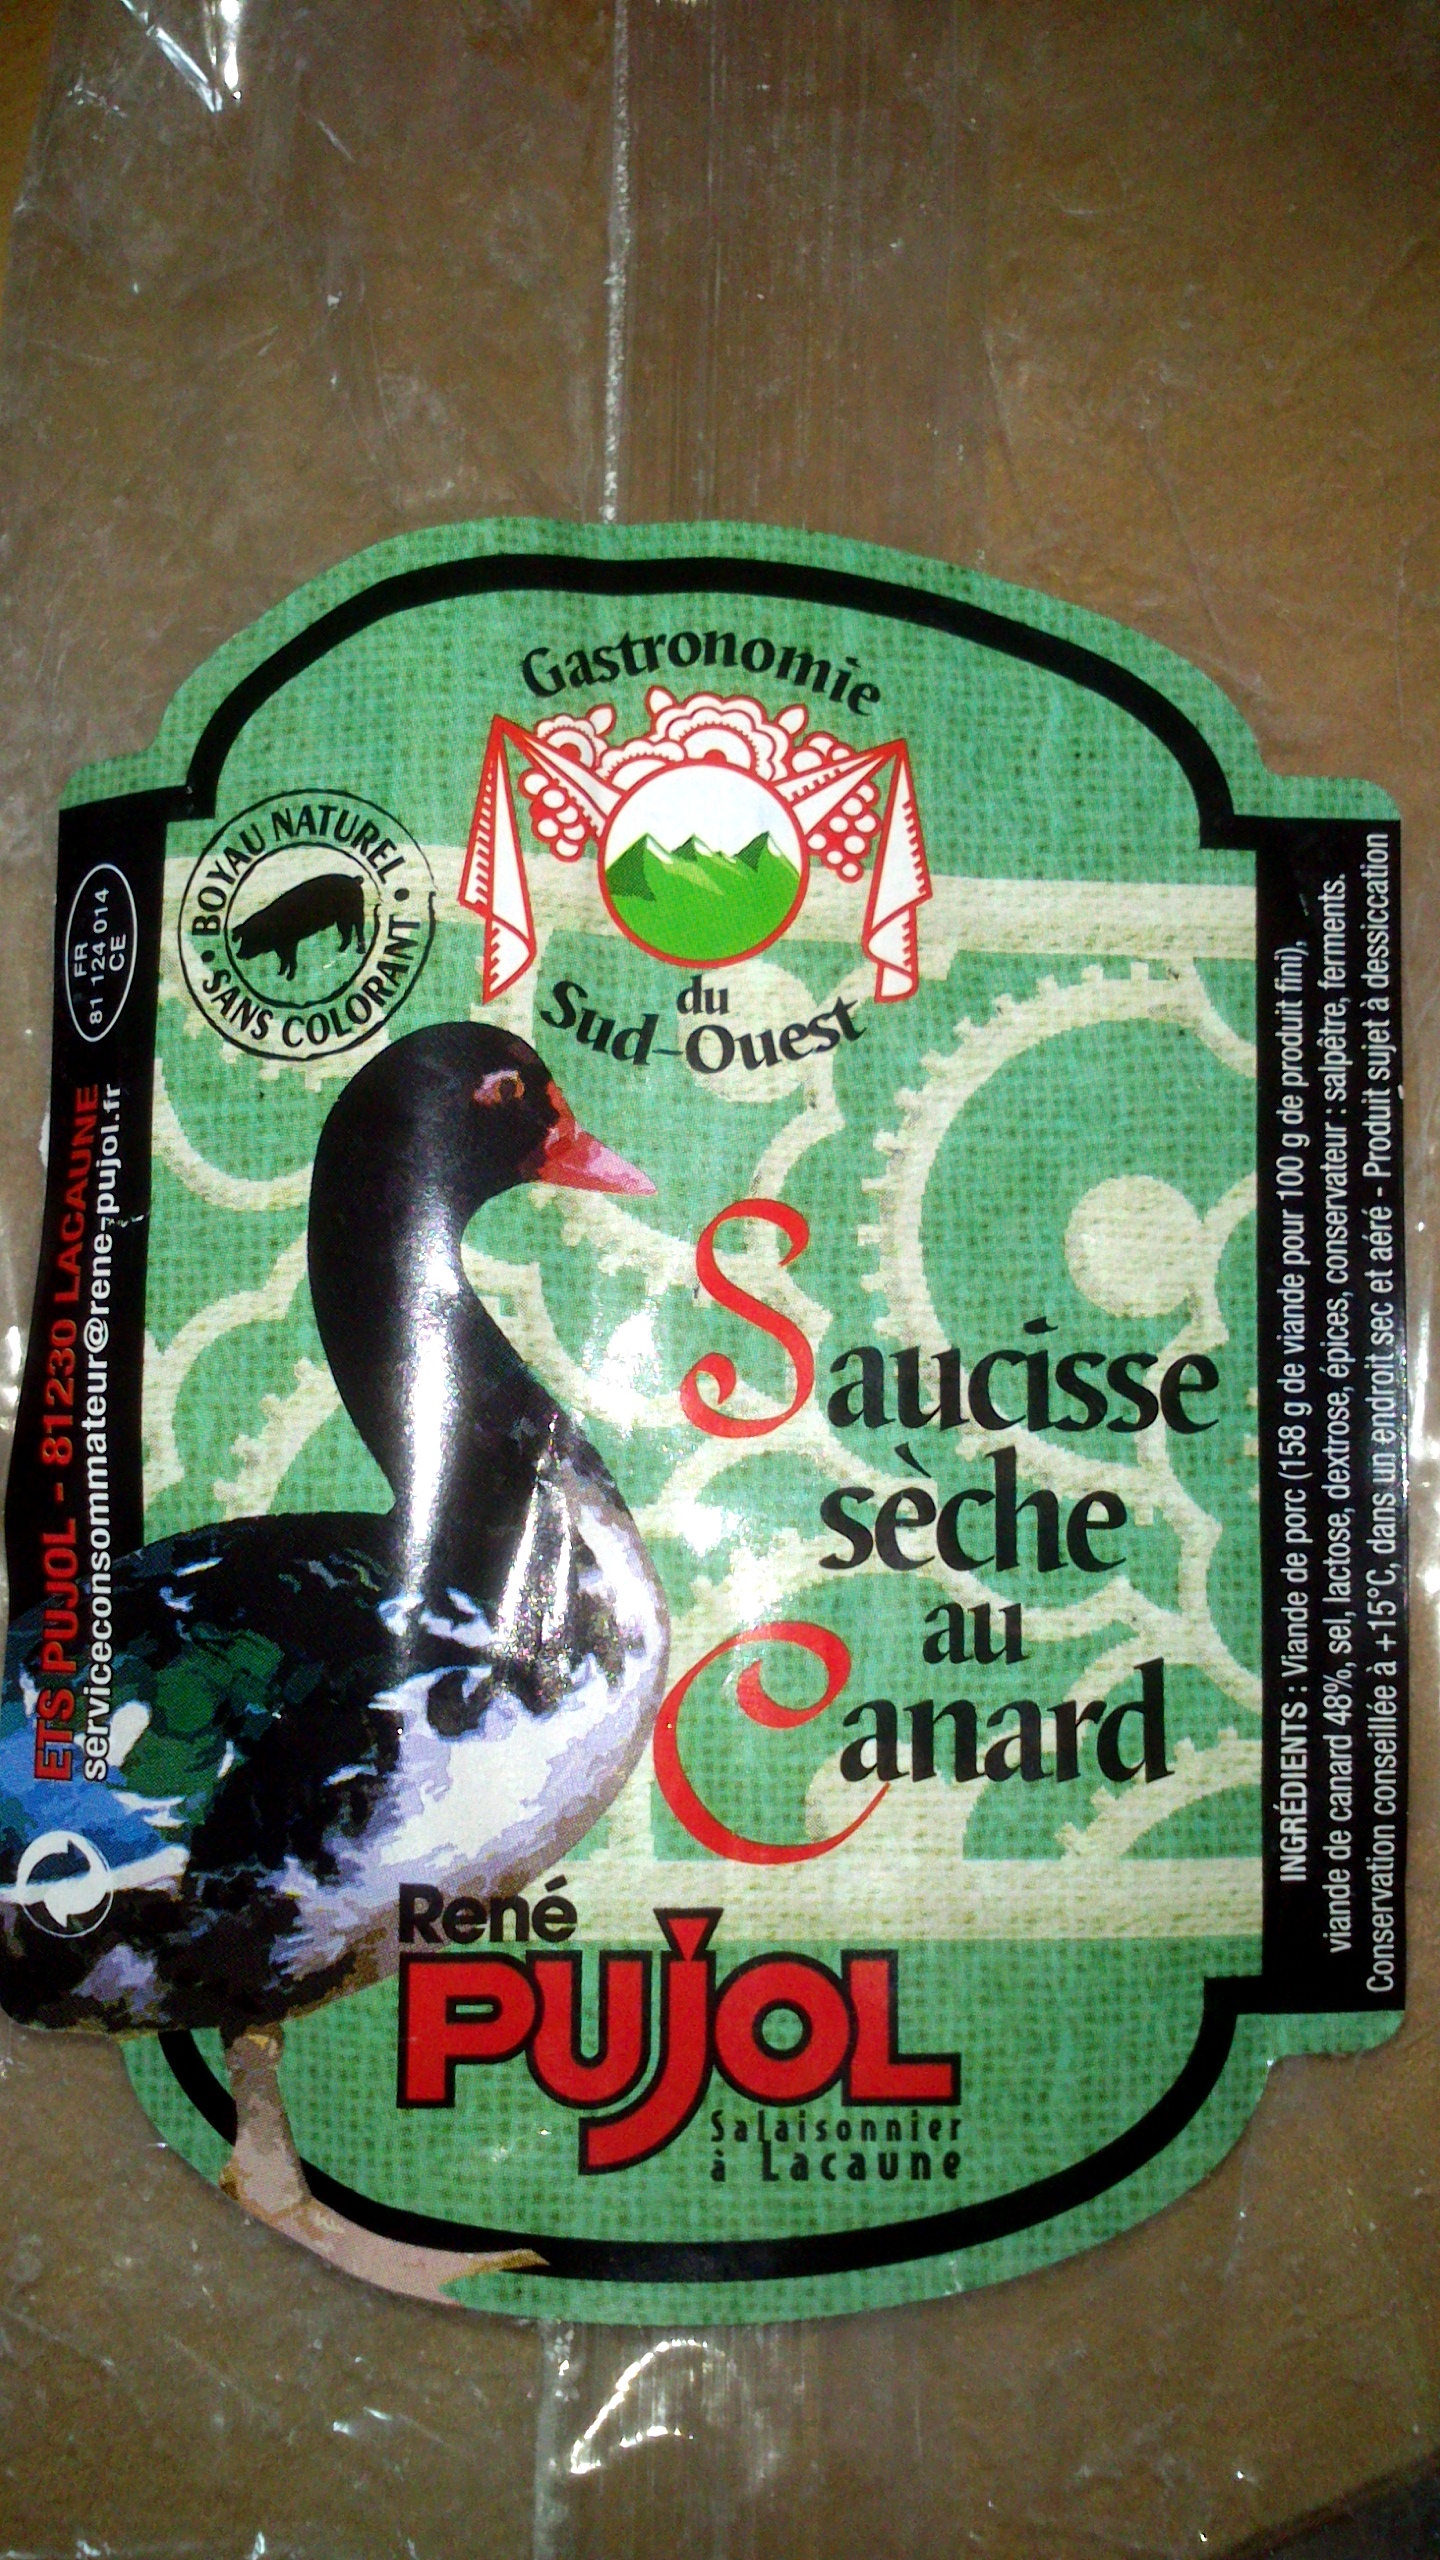 Saucisse sèche au canard - Product - fr